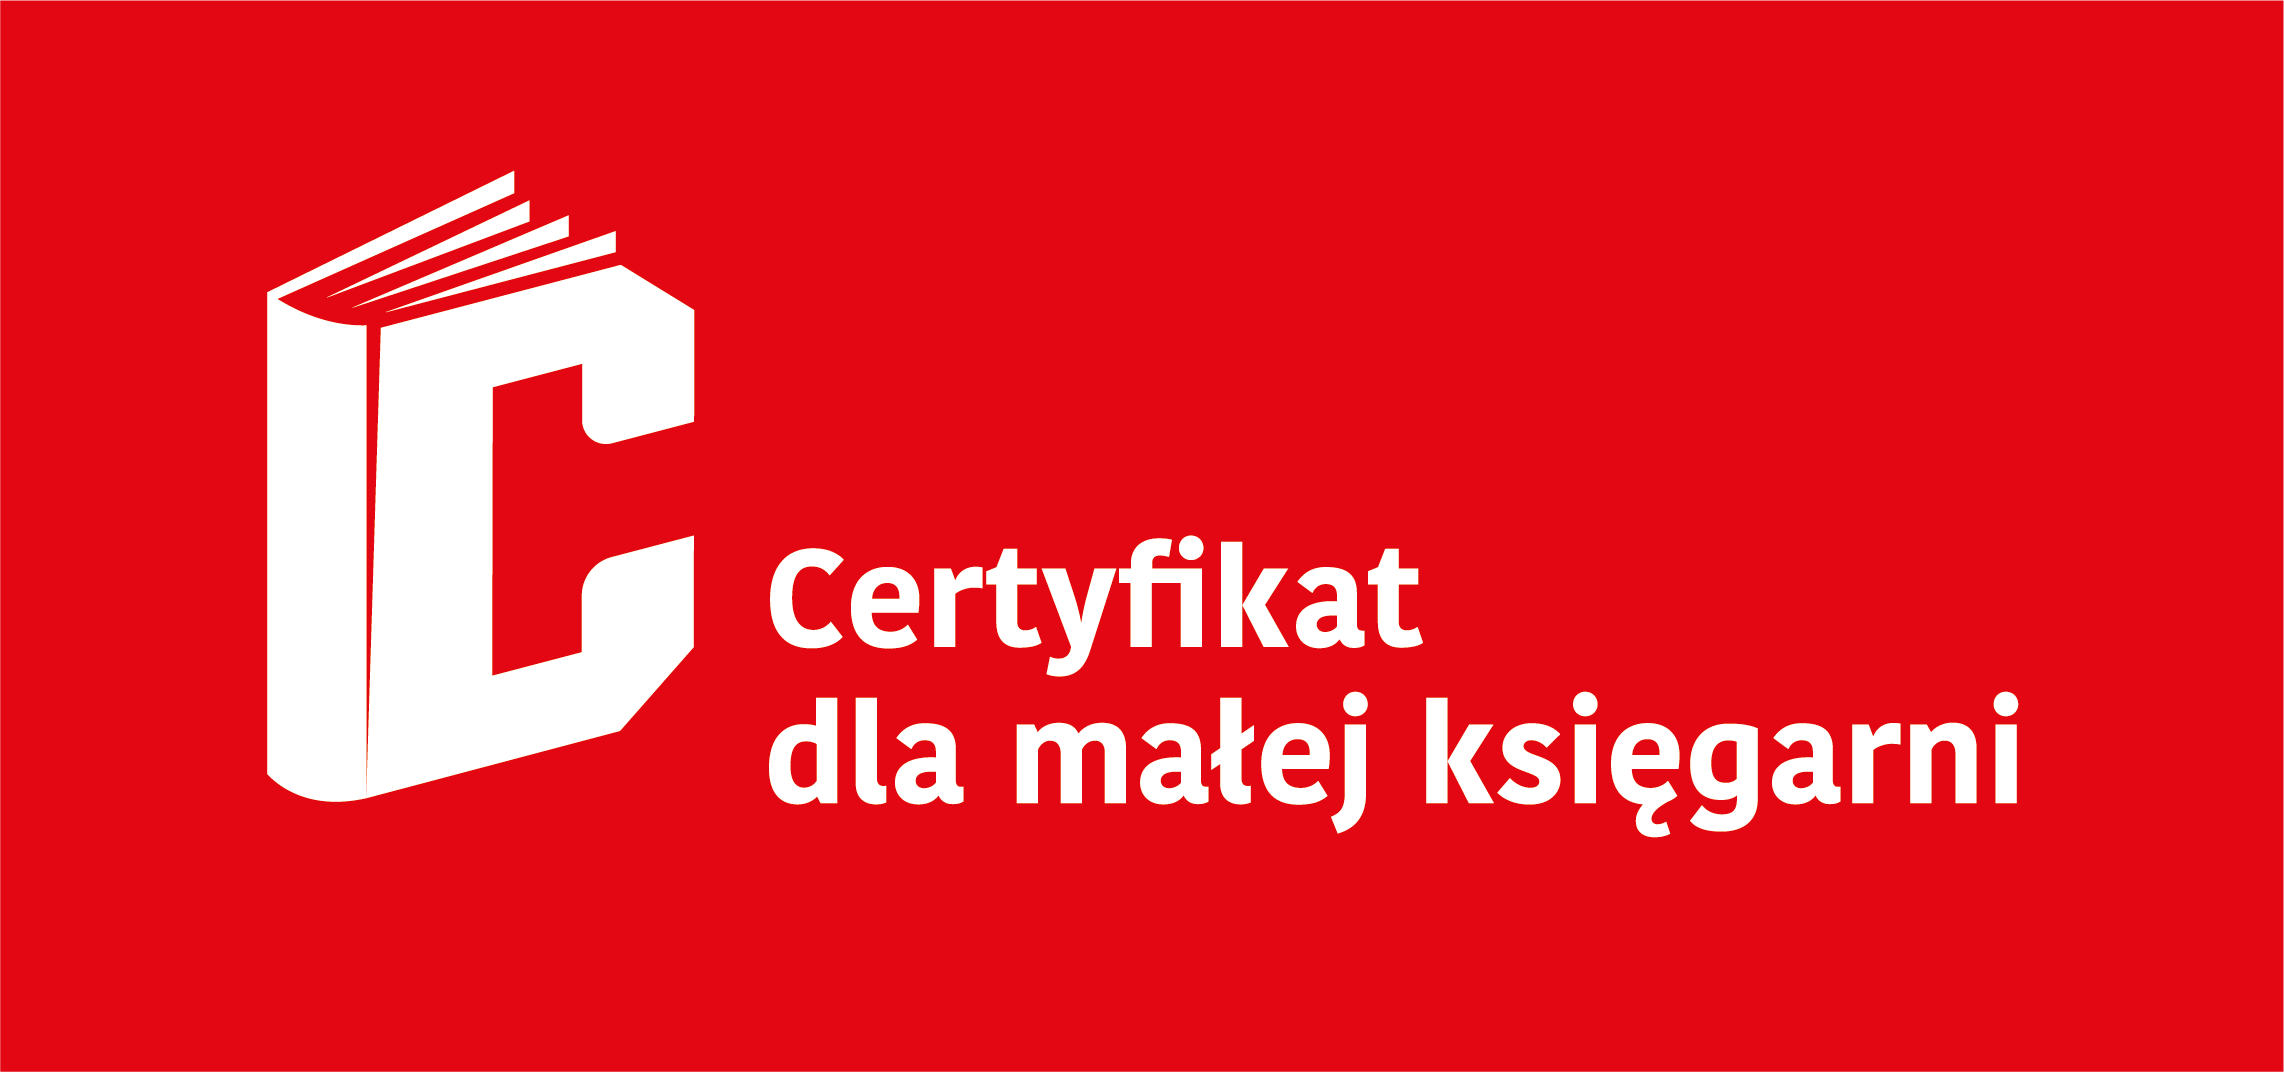 Logotyp - Certyfikat dla małych księgarni